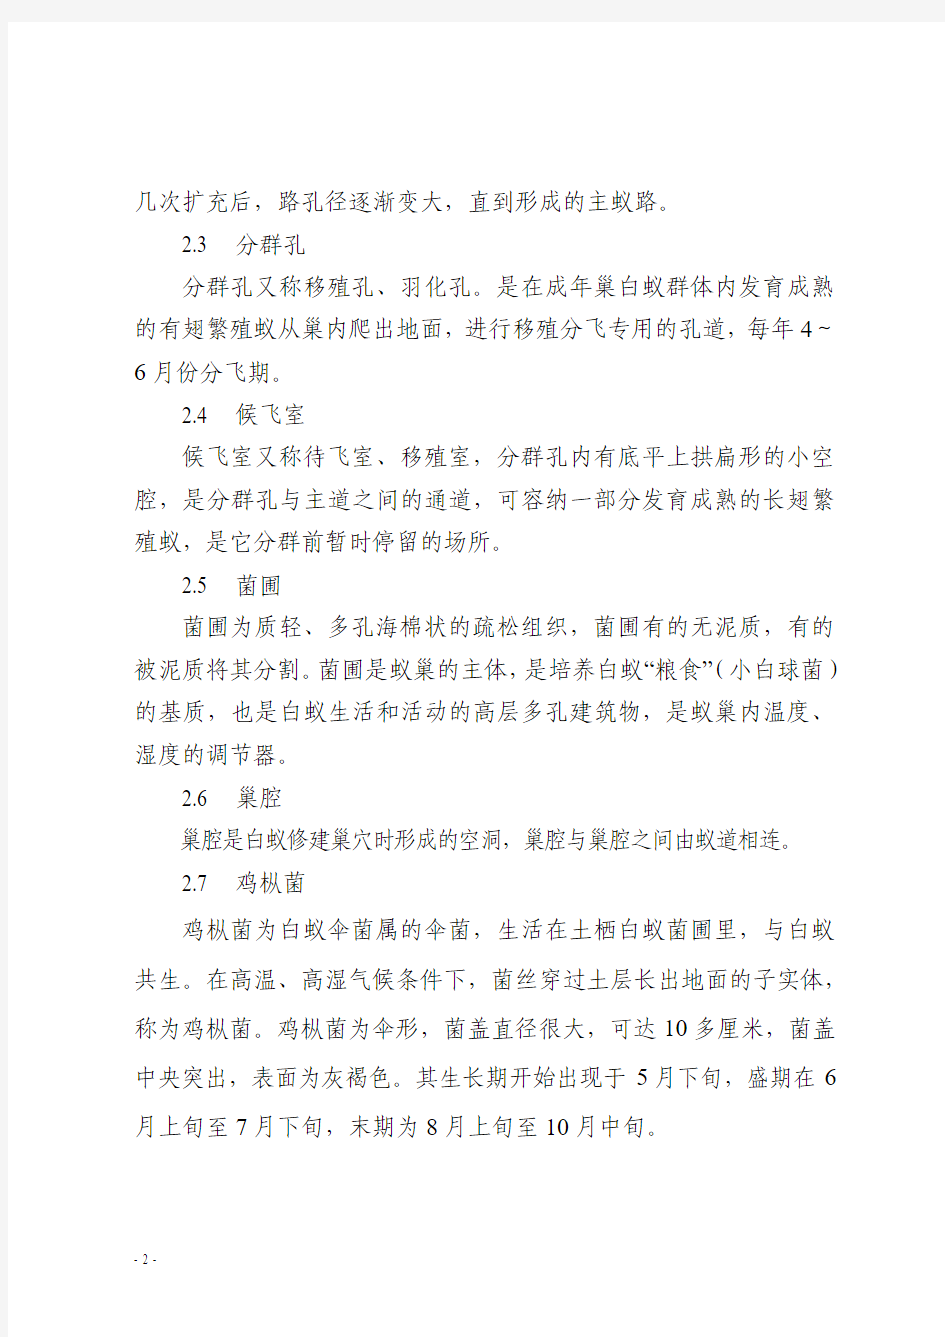 2015-411广东省水利工程白蚁防治技术指南